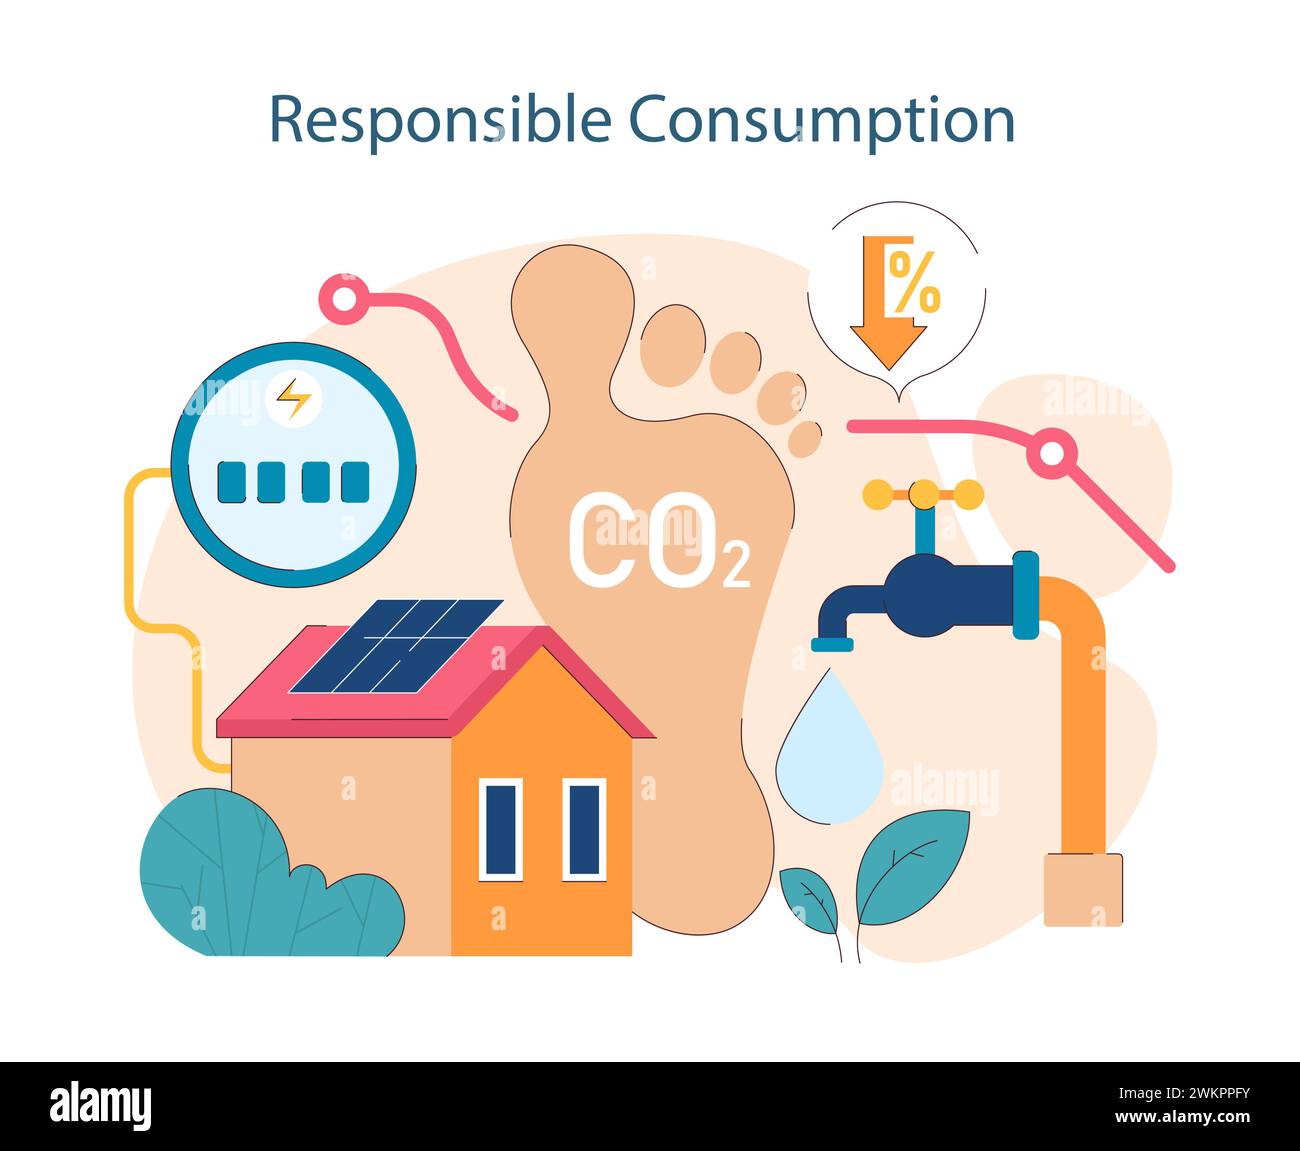 Verantwortungsbewusster Konsum. Darstellung nachhaltiger Praktiken in den Bereichen Energie, Wasserverbrauch und Verringerung des CO2-Fußabdrucks. Für Ökoeffizienz eintreten. Illustration des flachen Vektors Stock Vektor